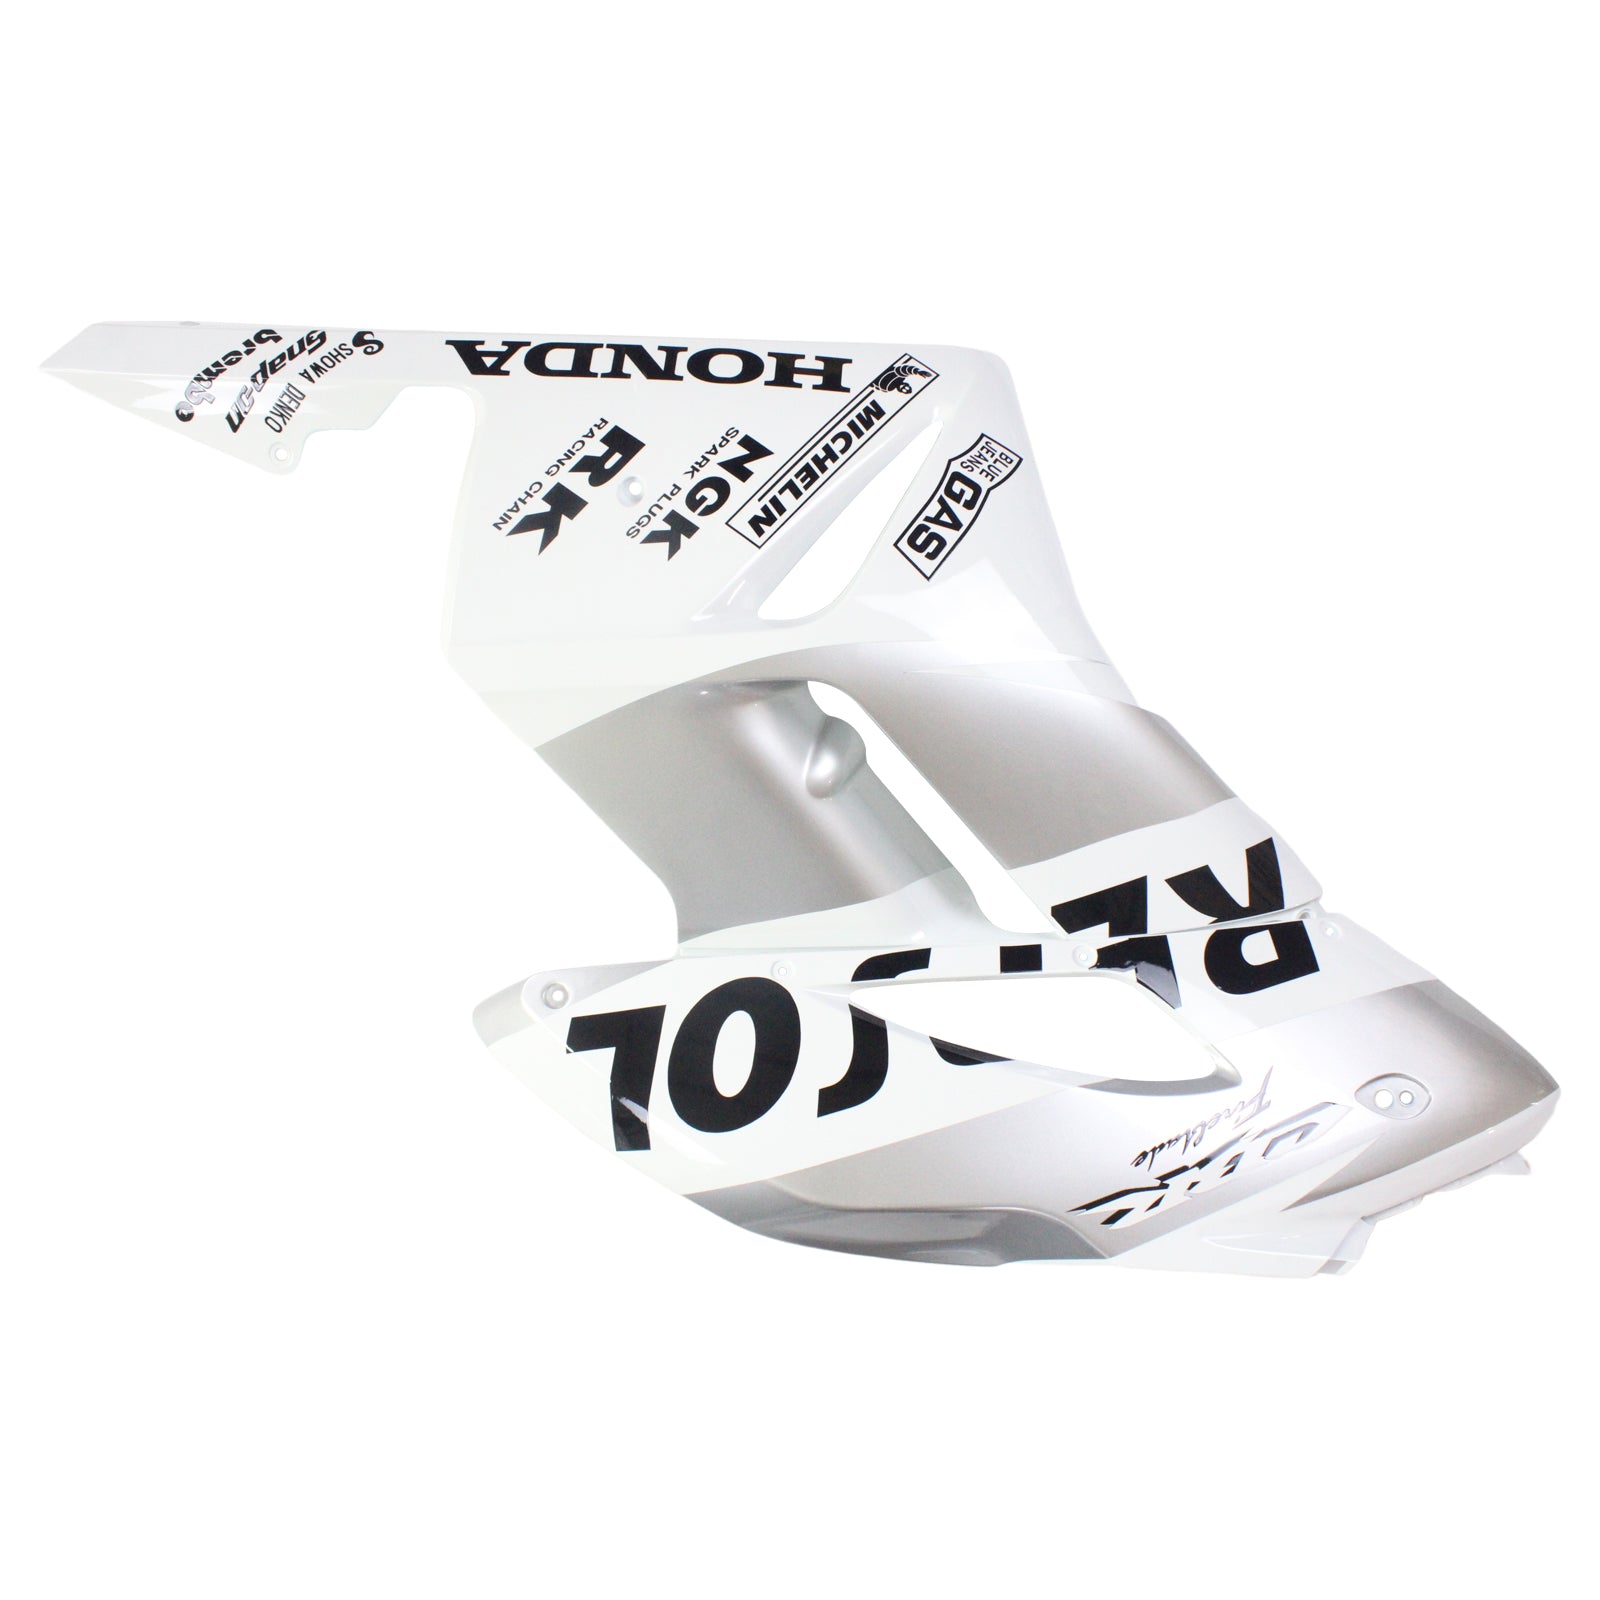 Amotopart Verkleidungen Honda CBR1000RR 2004–2005 Verkleidung Weiß Silber Repsol Racing Verkleidungsset